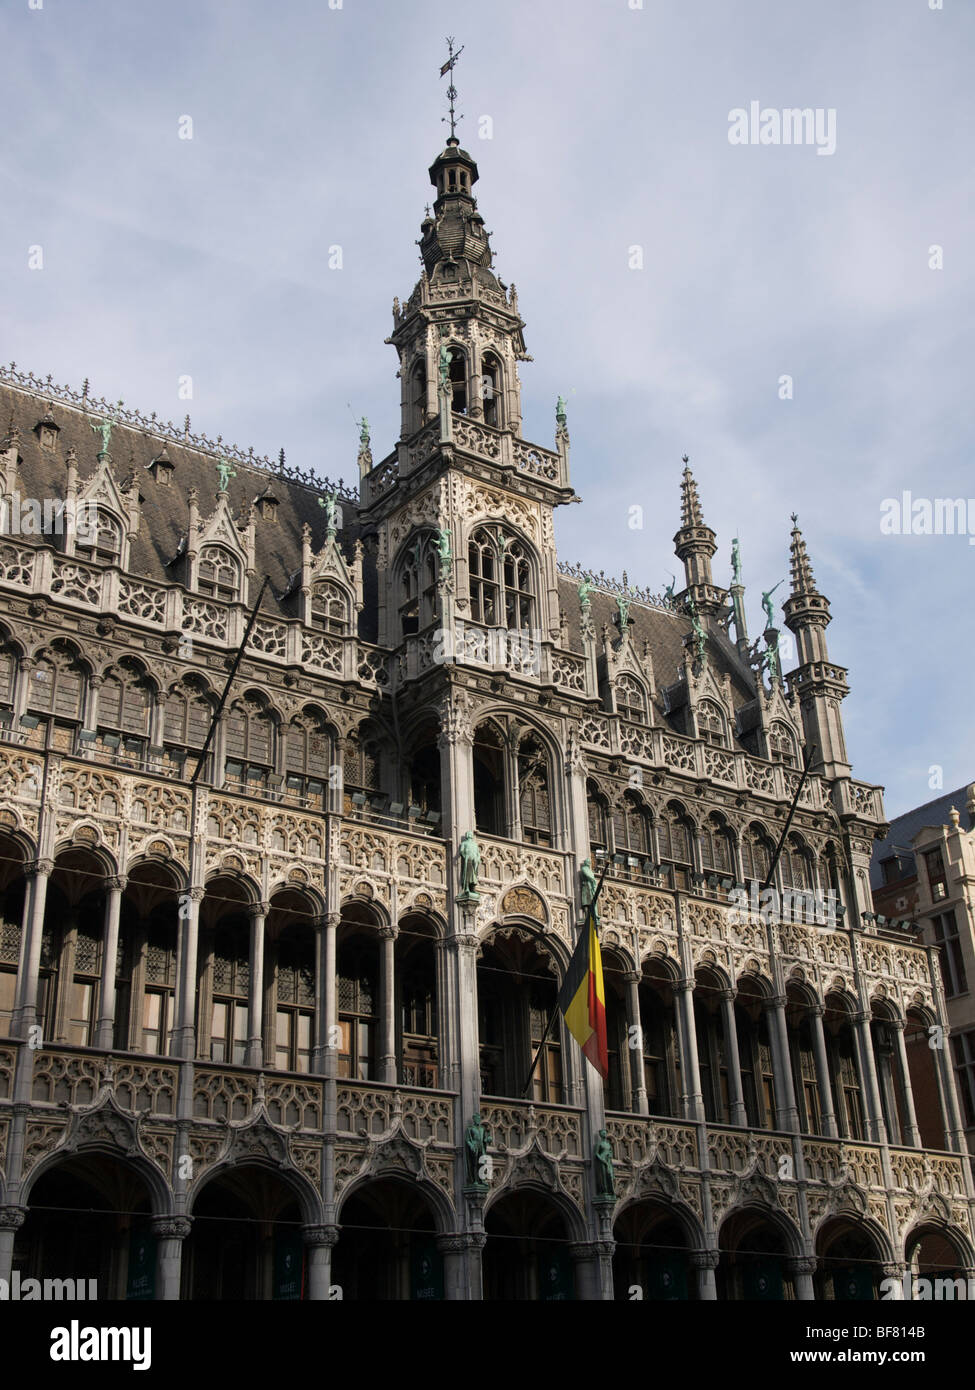 Le Musée de la ville musée sur la Grand Place grand place à Bruxelles, Belgique. Banque D'Images